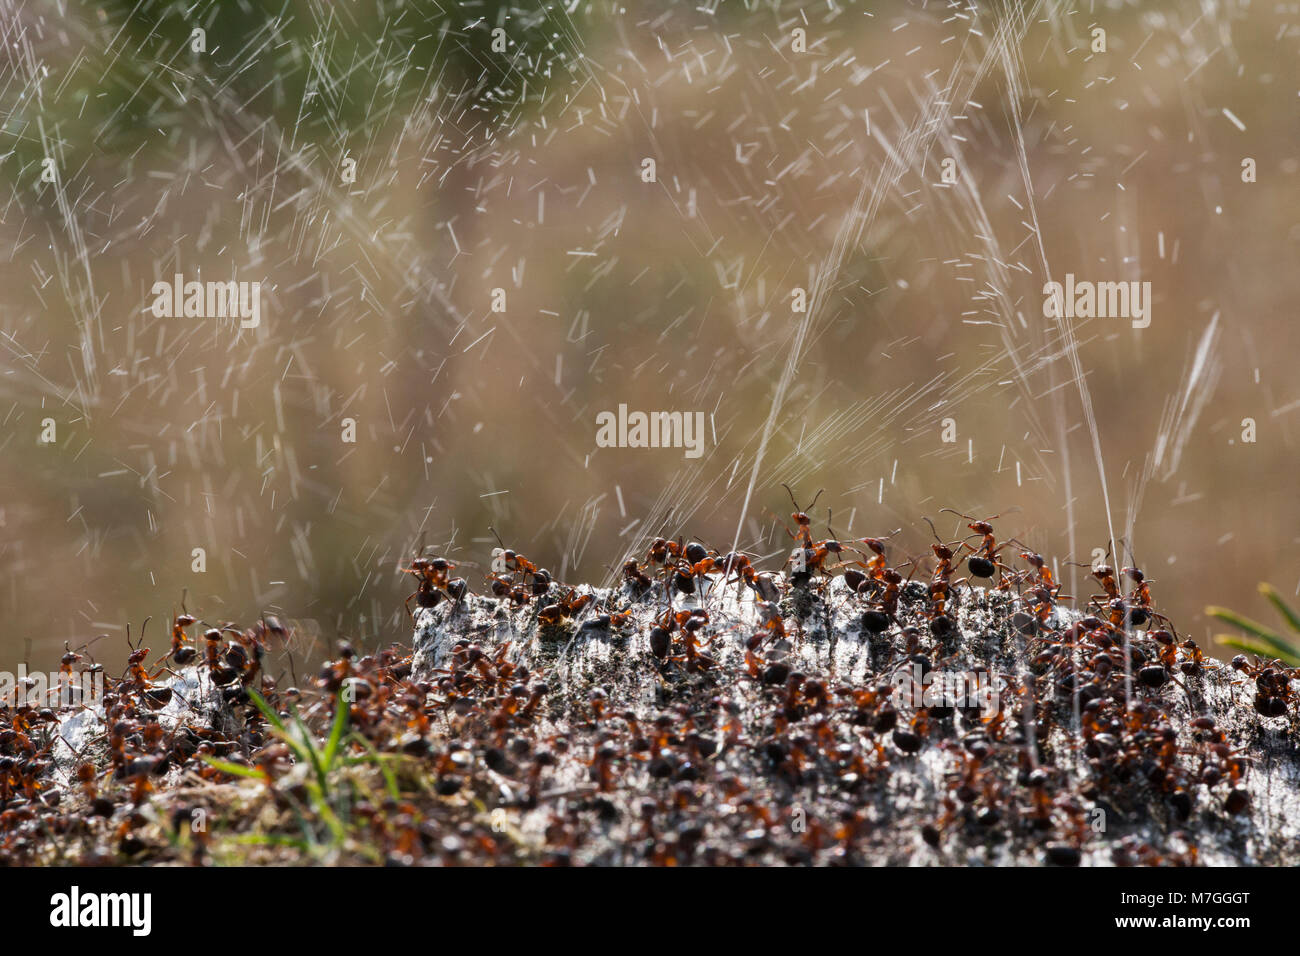 Legno di formiche formica rufa-per difendere il loro nido per la Spruzzatura di acido formico. L'acido formico è utilizzato per scoraggiare qualsiasi attaccando i predatori. Il Dorset England Regno Unito GB. Foto Stock